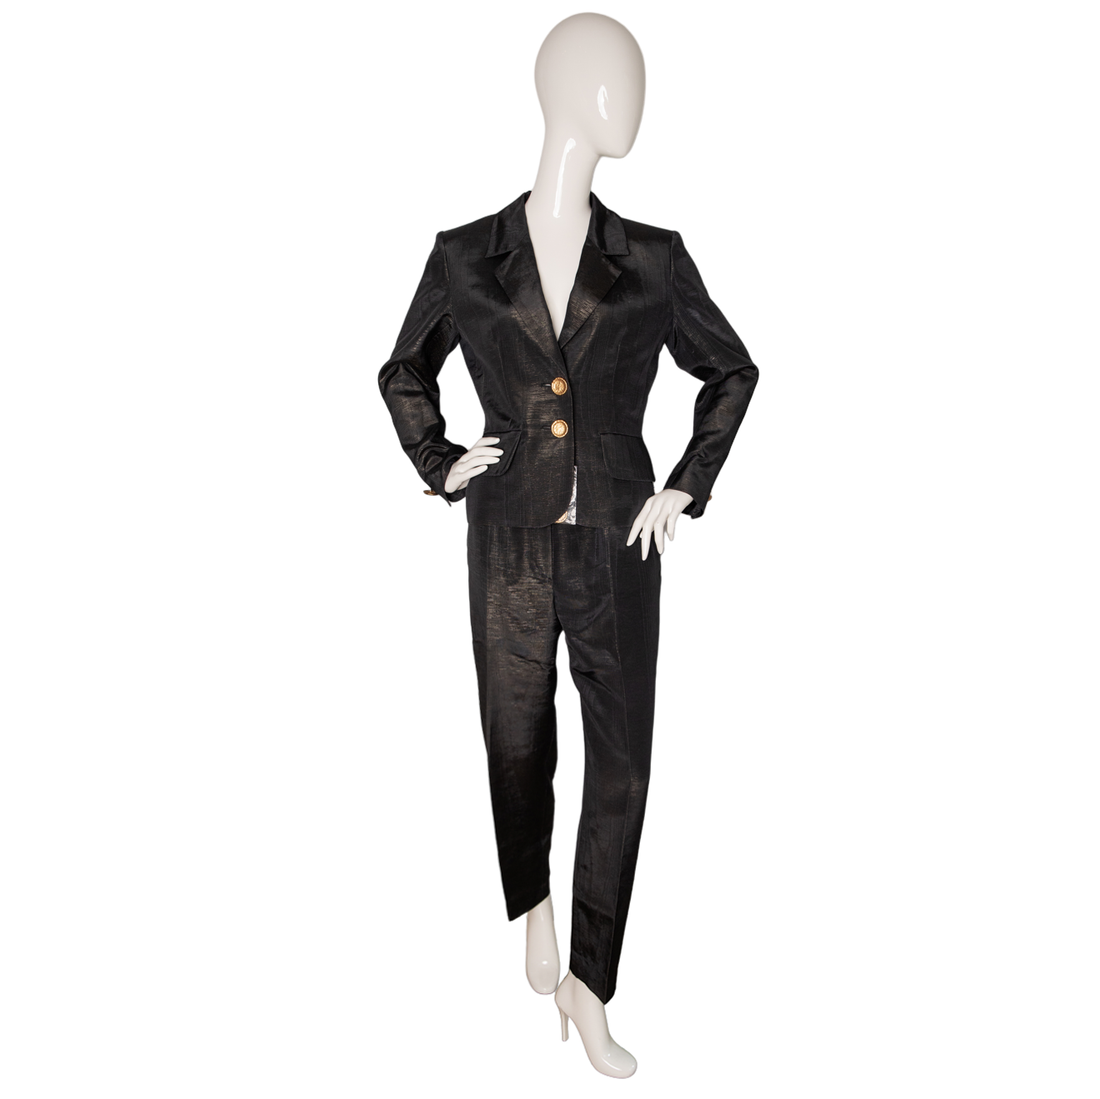 Saint Laurent Shimmering vintage lurex trouser suit with elaborate gold buttons